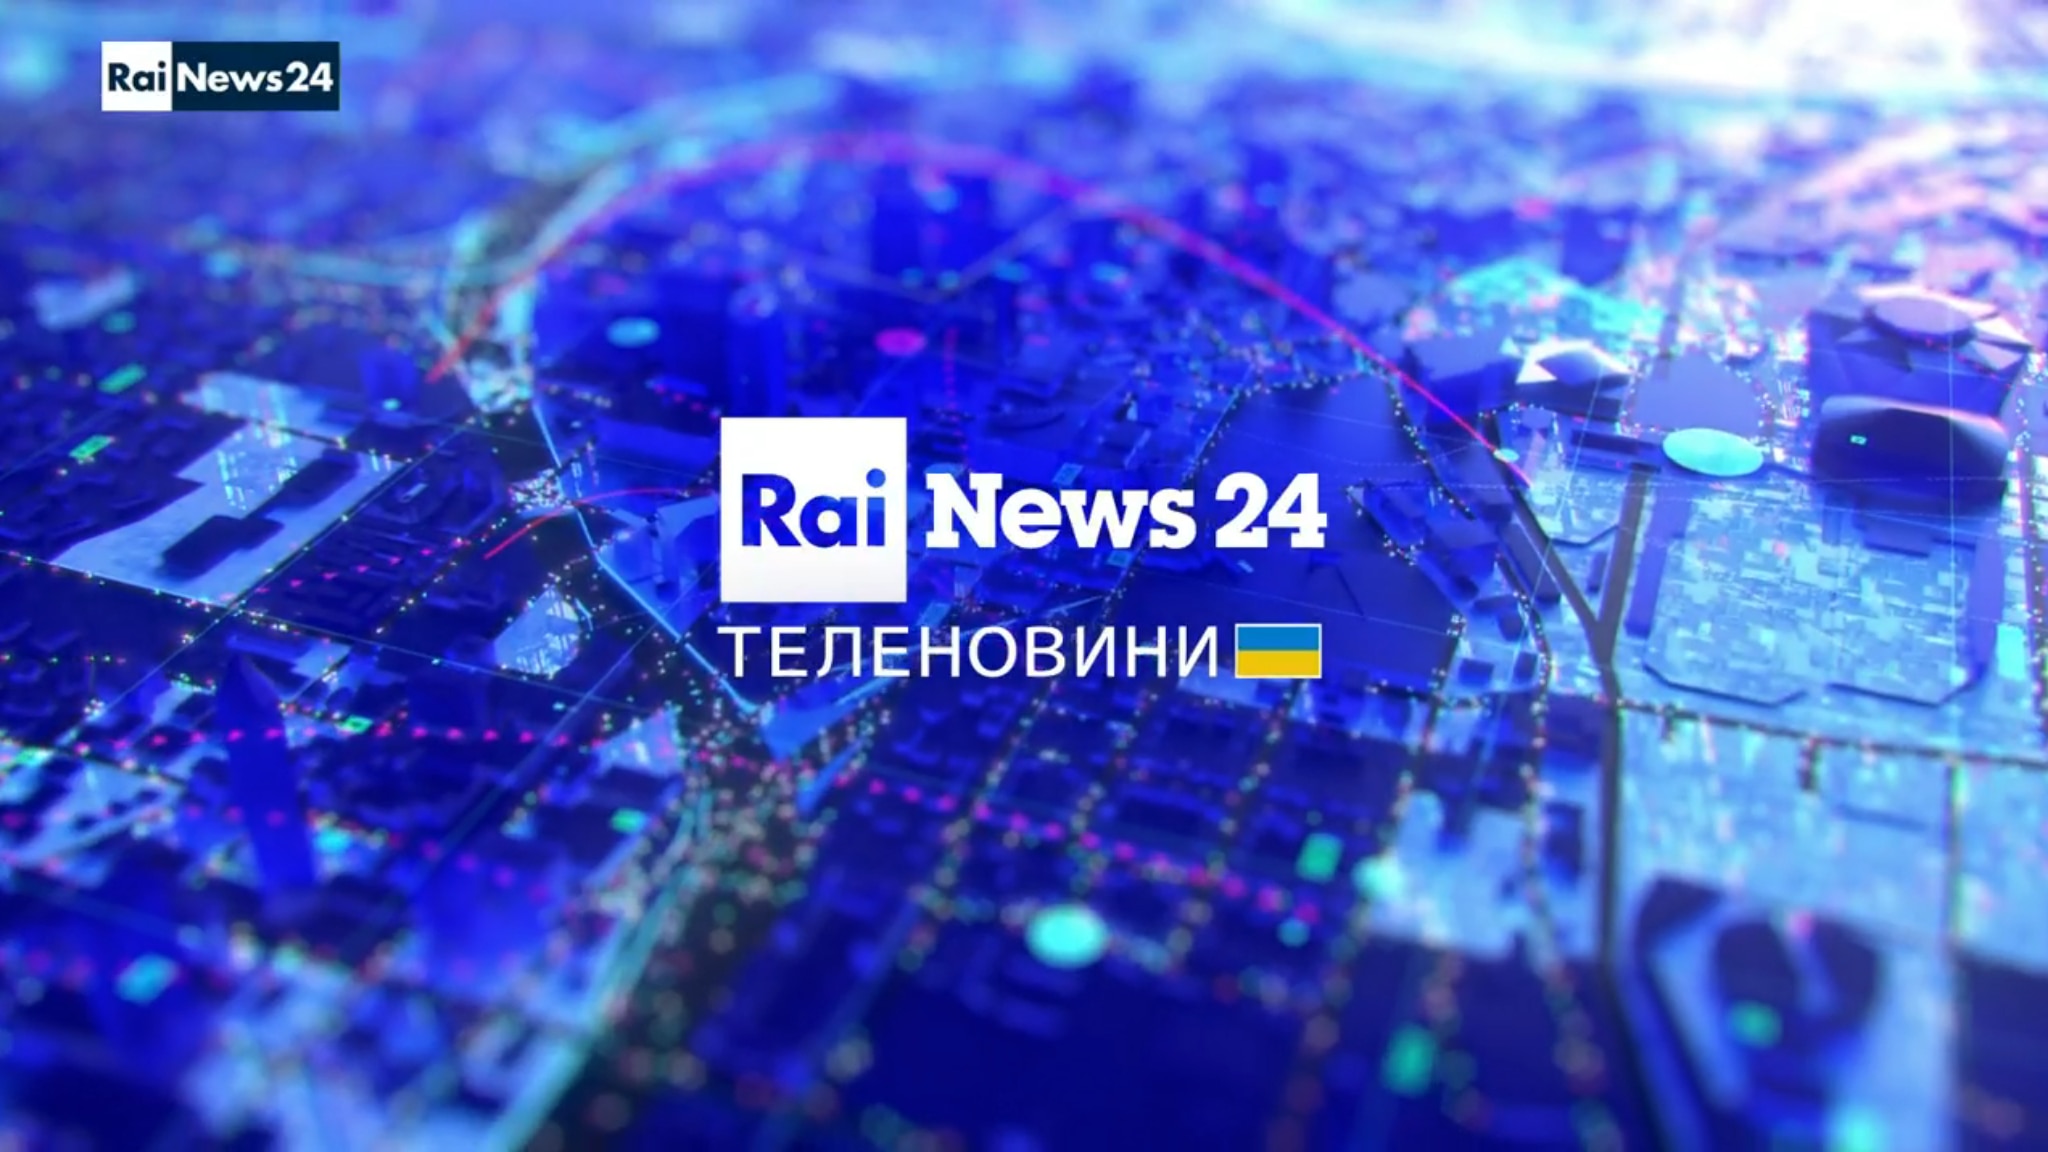 Il Tg in lingua ucraina di Rainews24